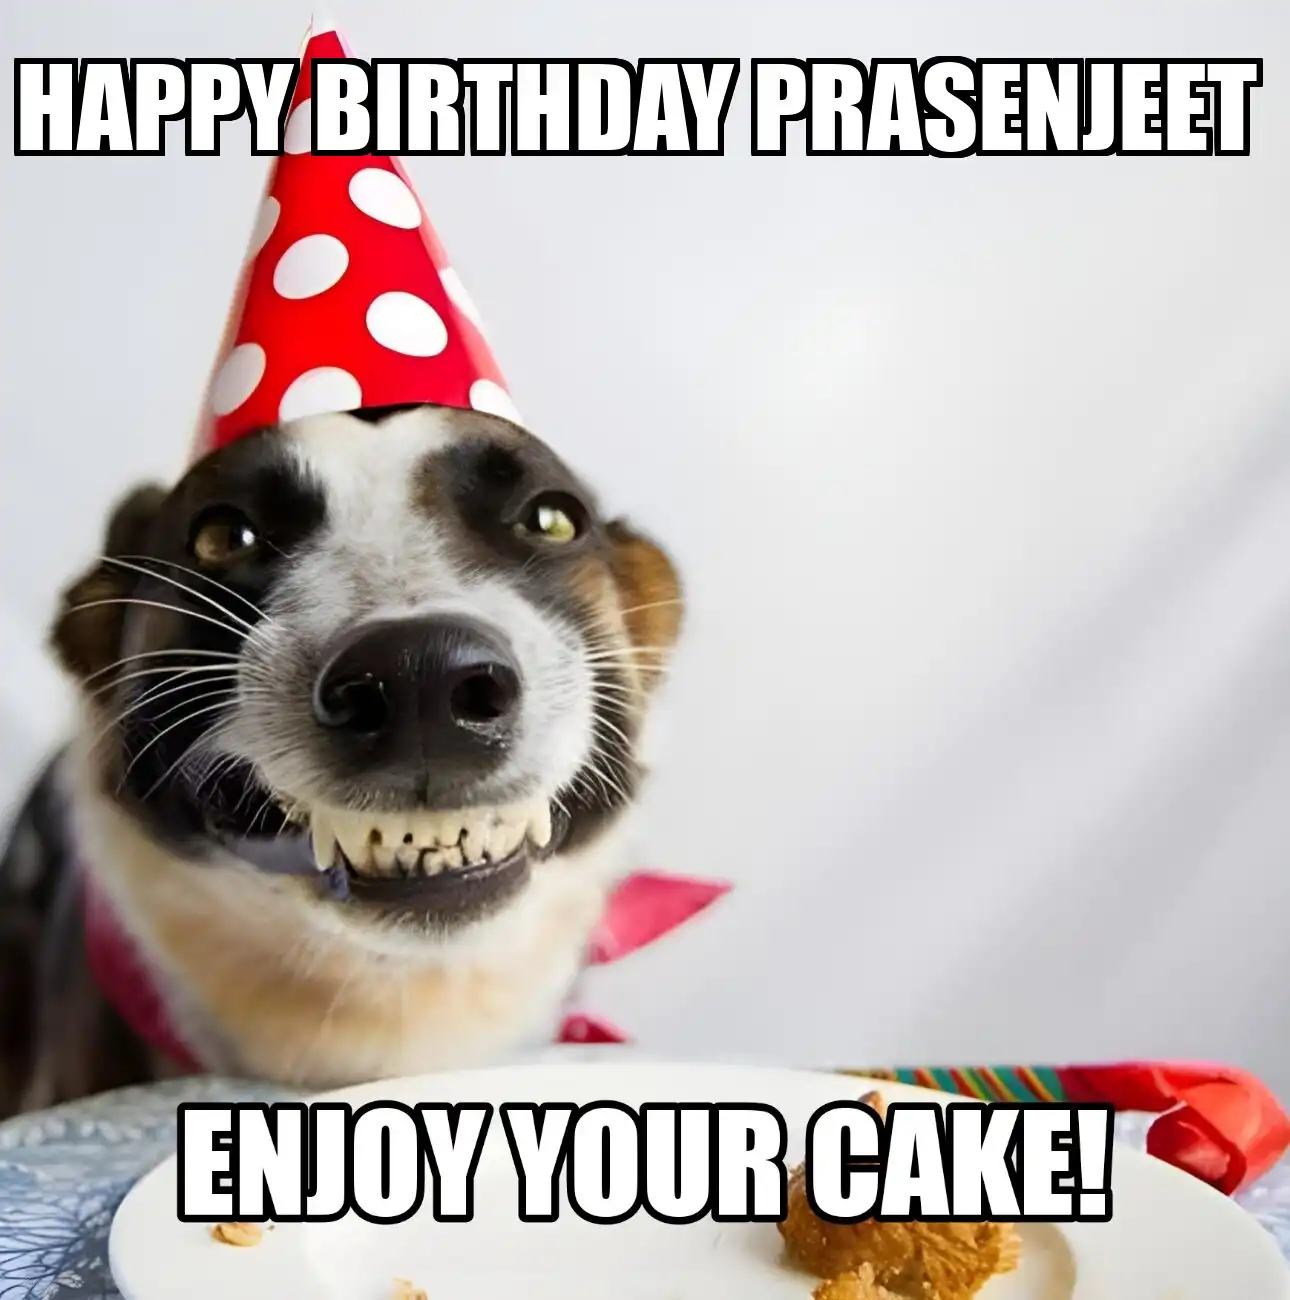 Happy Birthday Prasenjeet Enjoy Your Cake Dog Meme